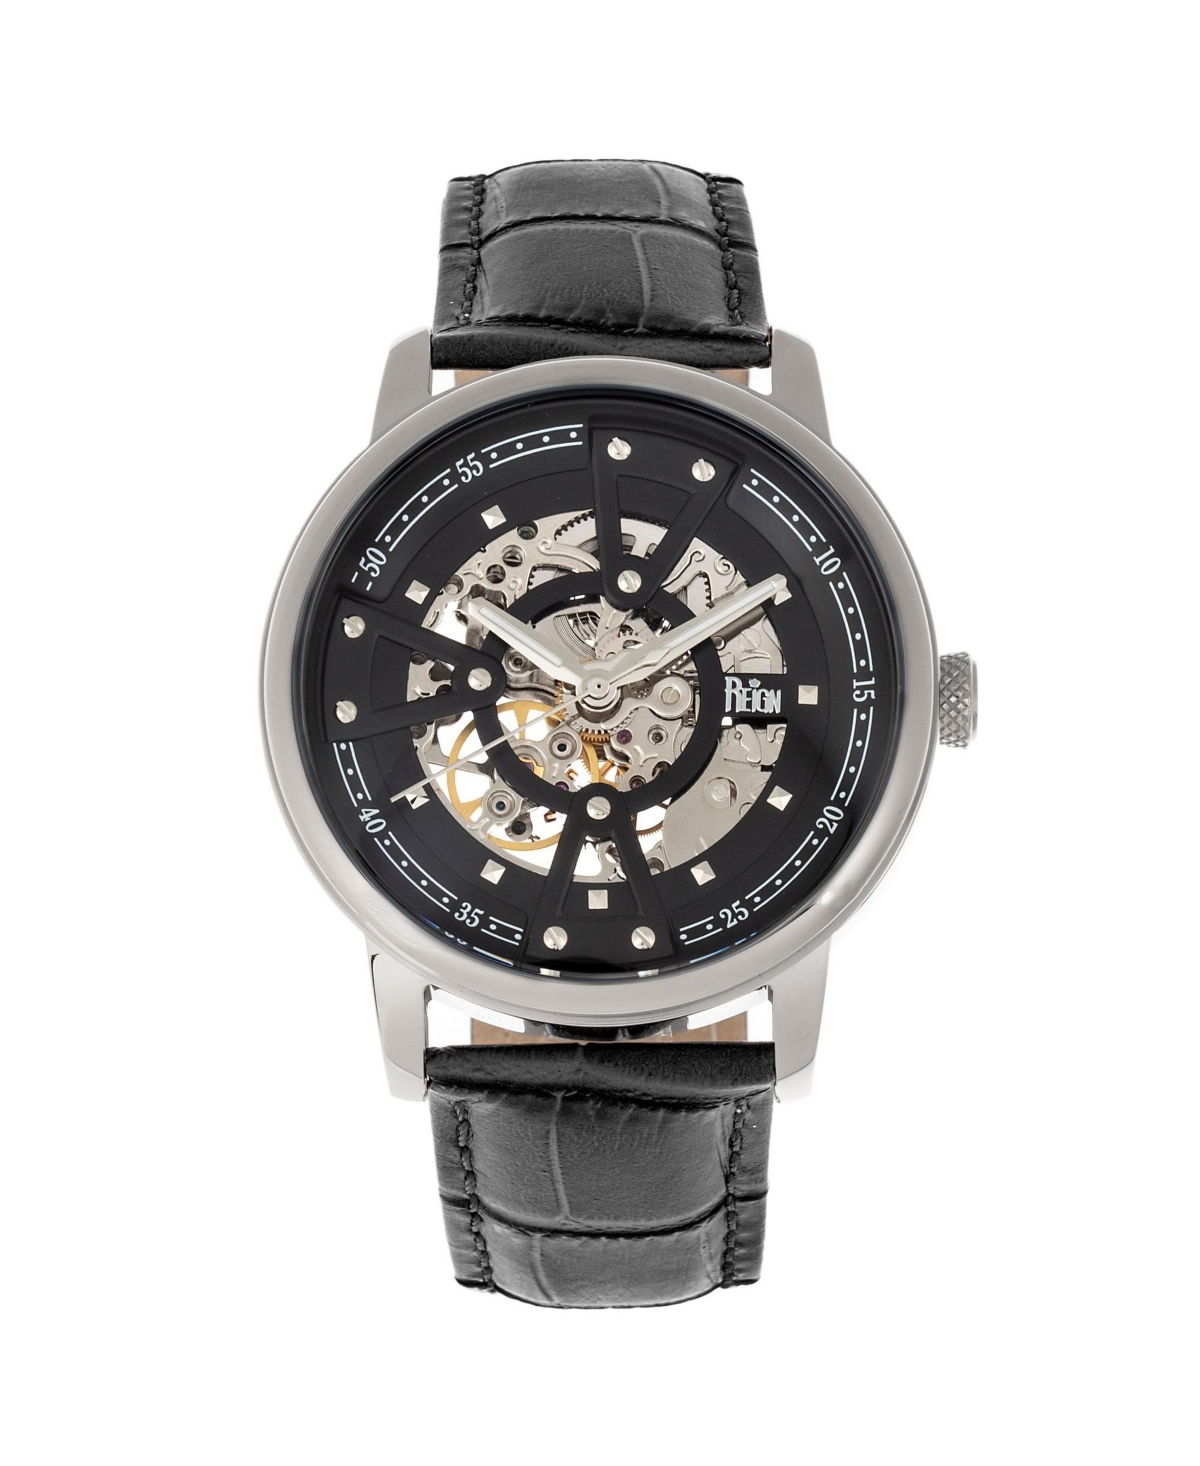 Men Belfour Leather Watch - Silver/Black, 44mm - Silver/black